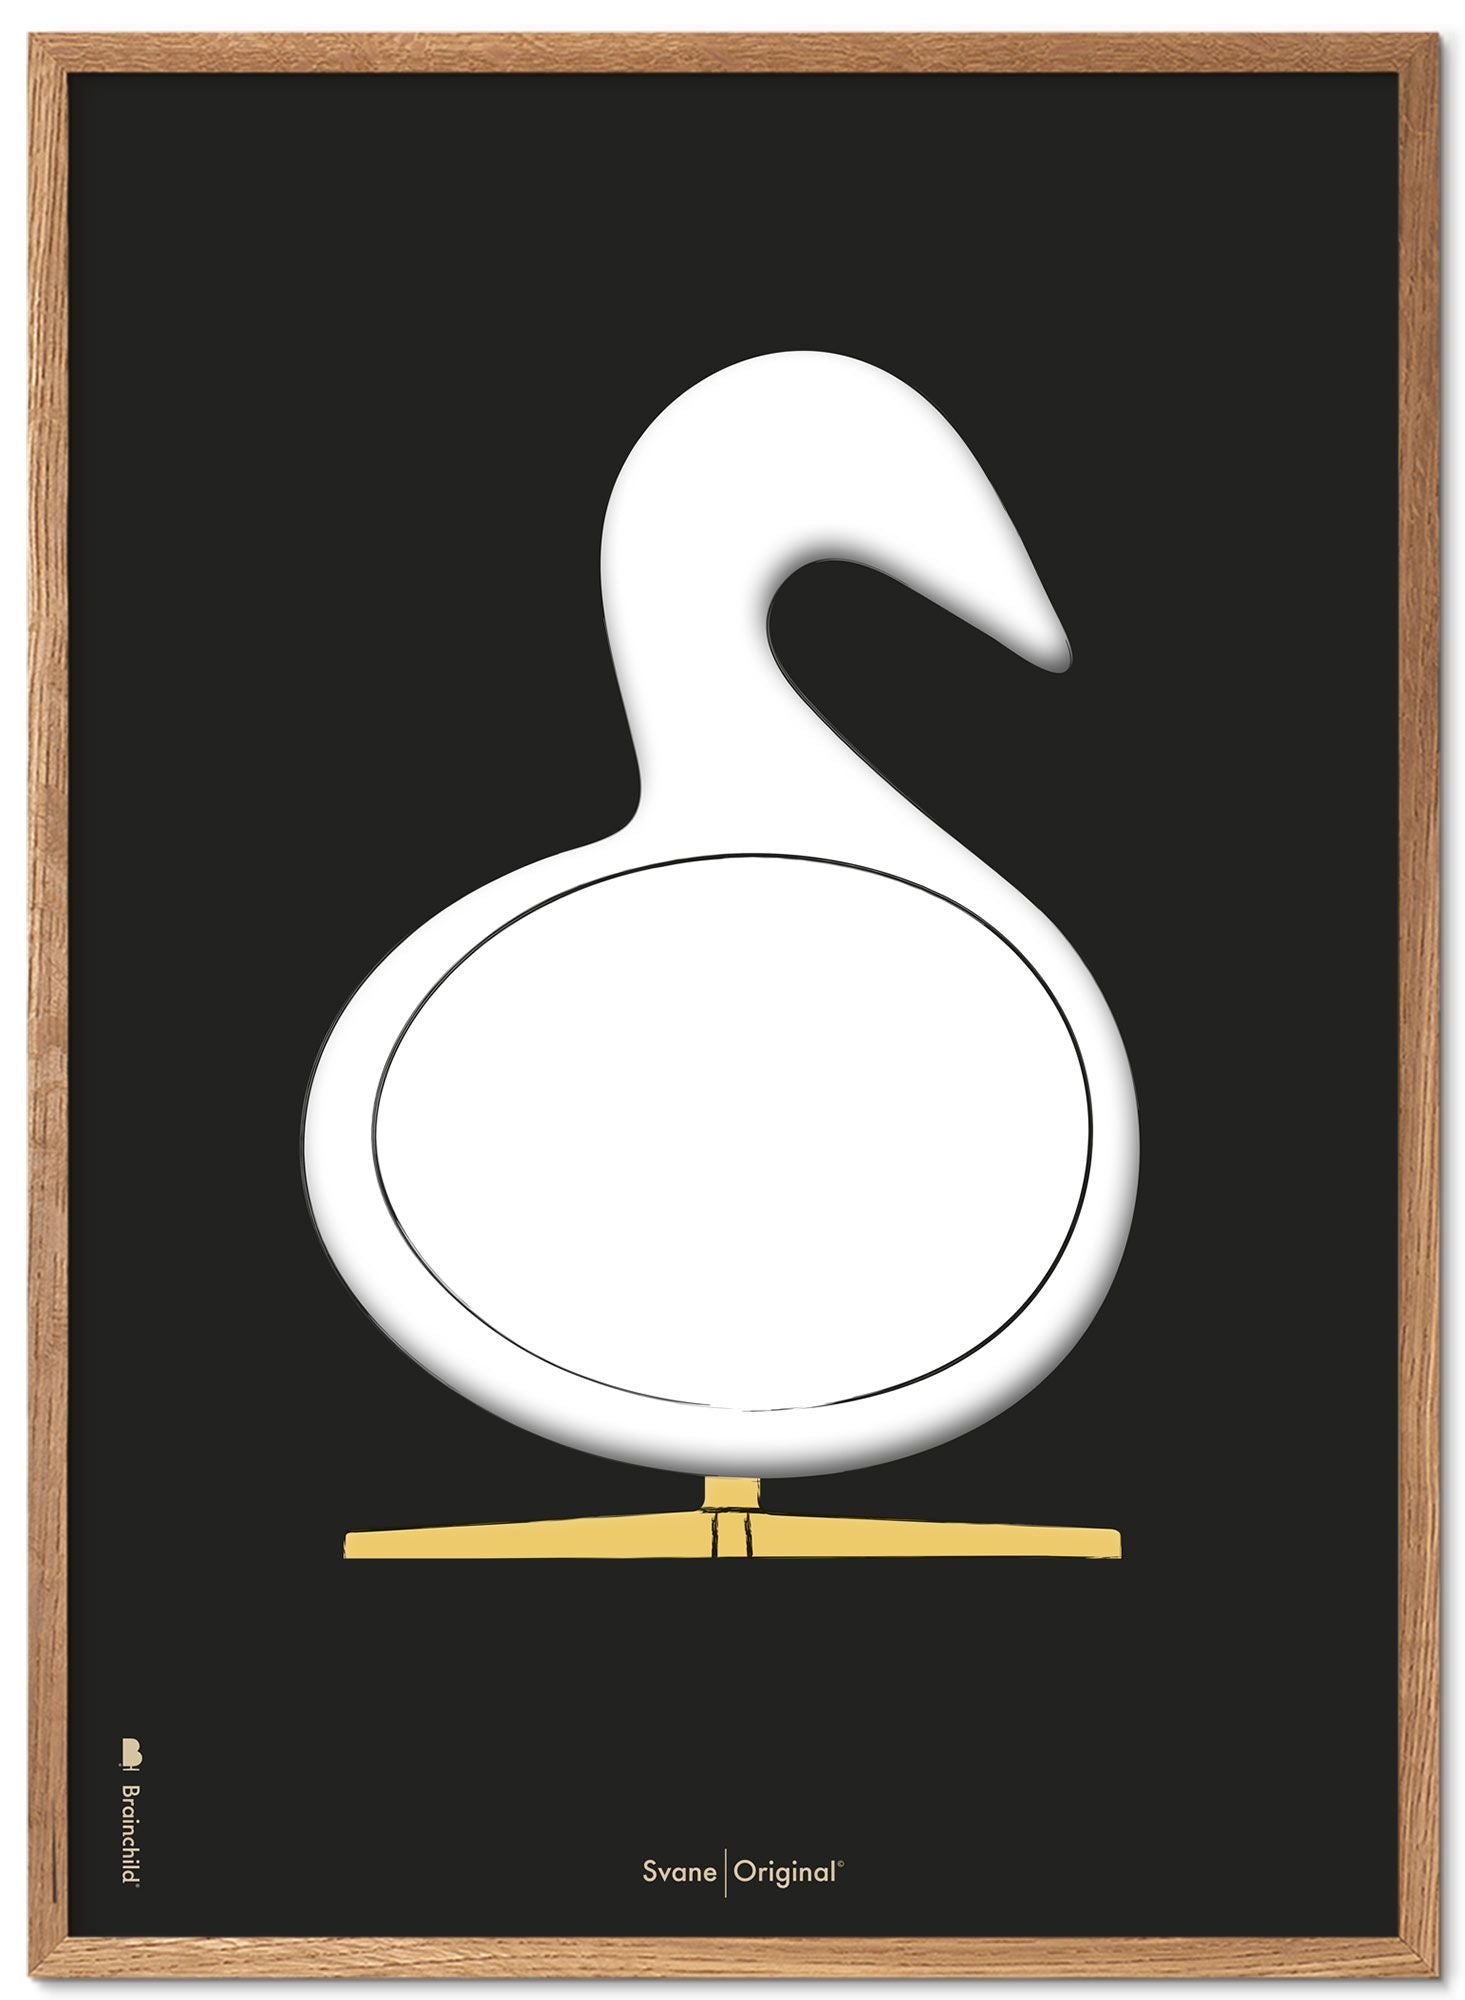 Marco de póster de boceto de diseño de Swan.